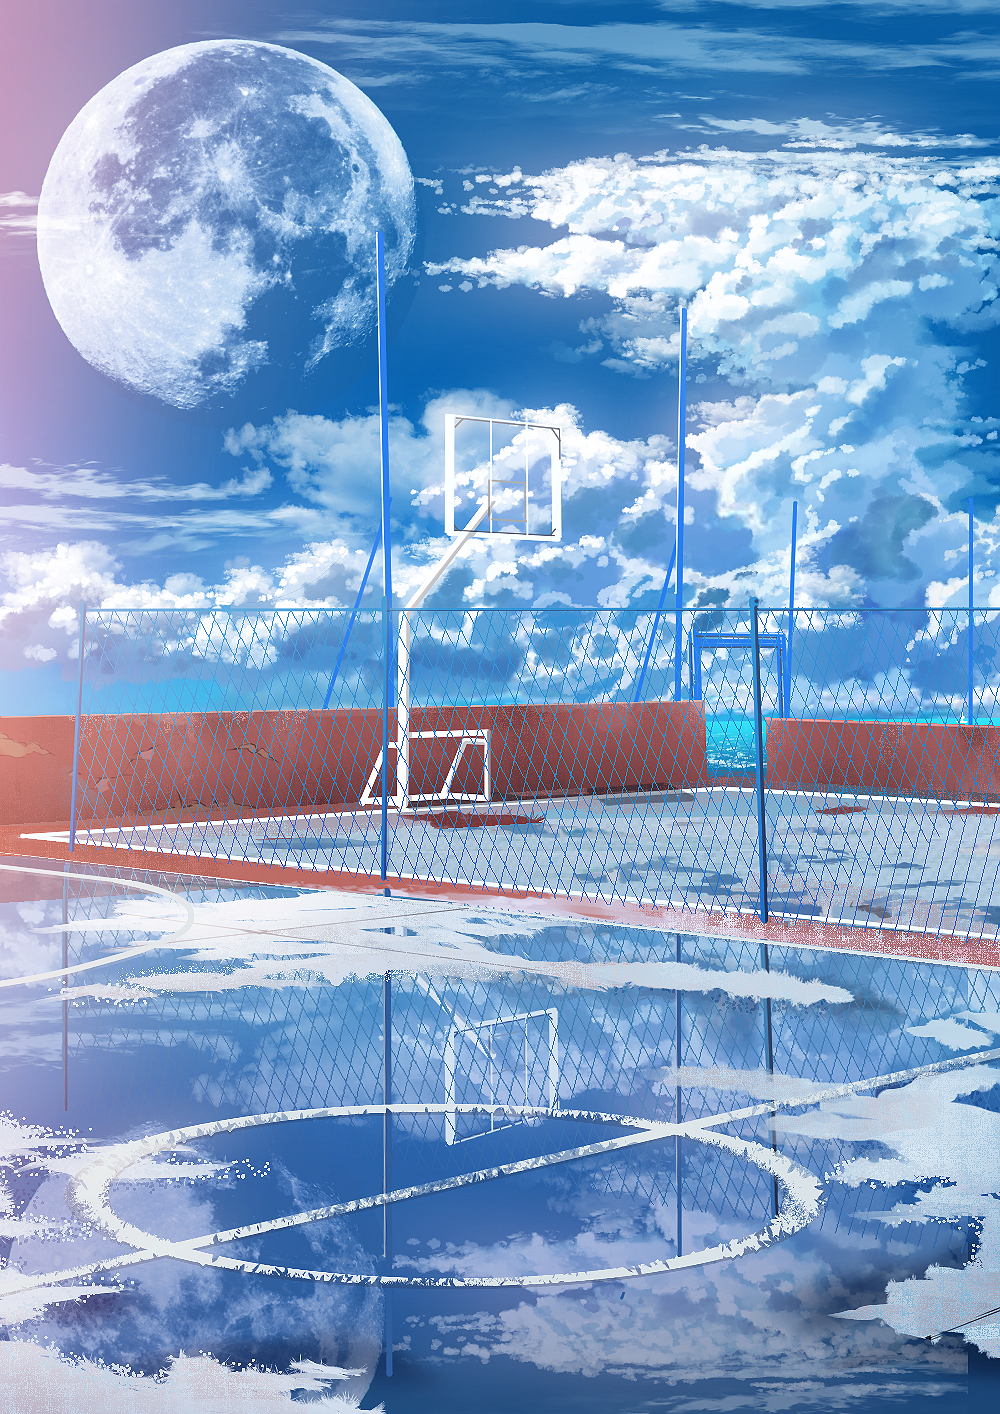 Фото Баскетбольная площадка на крыше, затопленная водой, под облачным небом с планетой, by smile